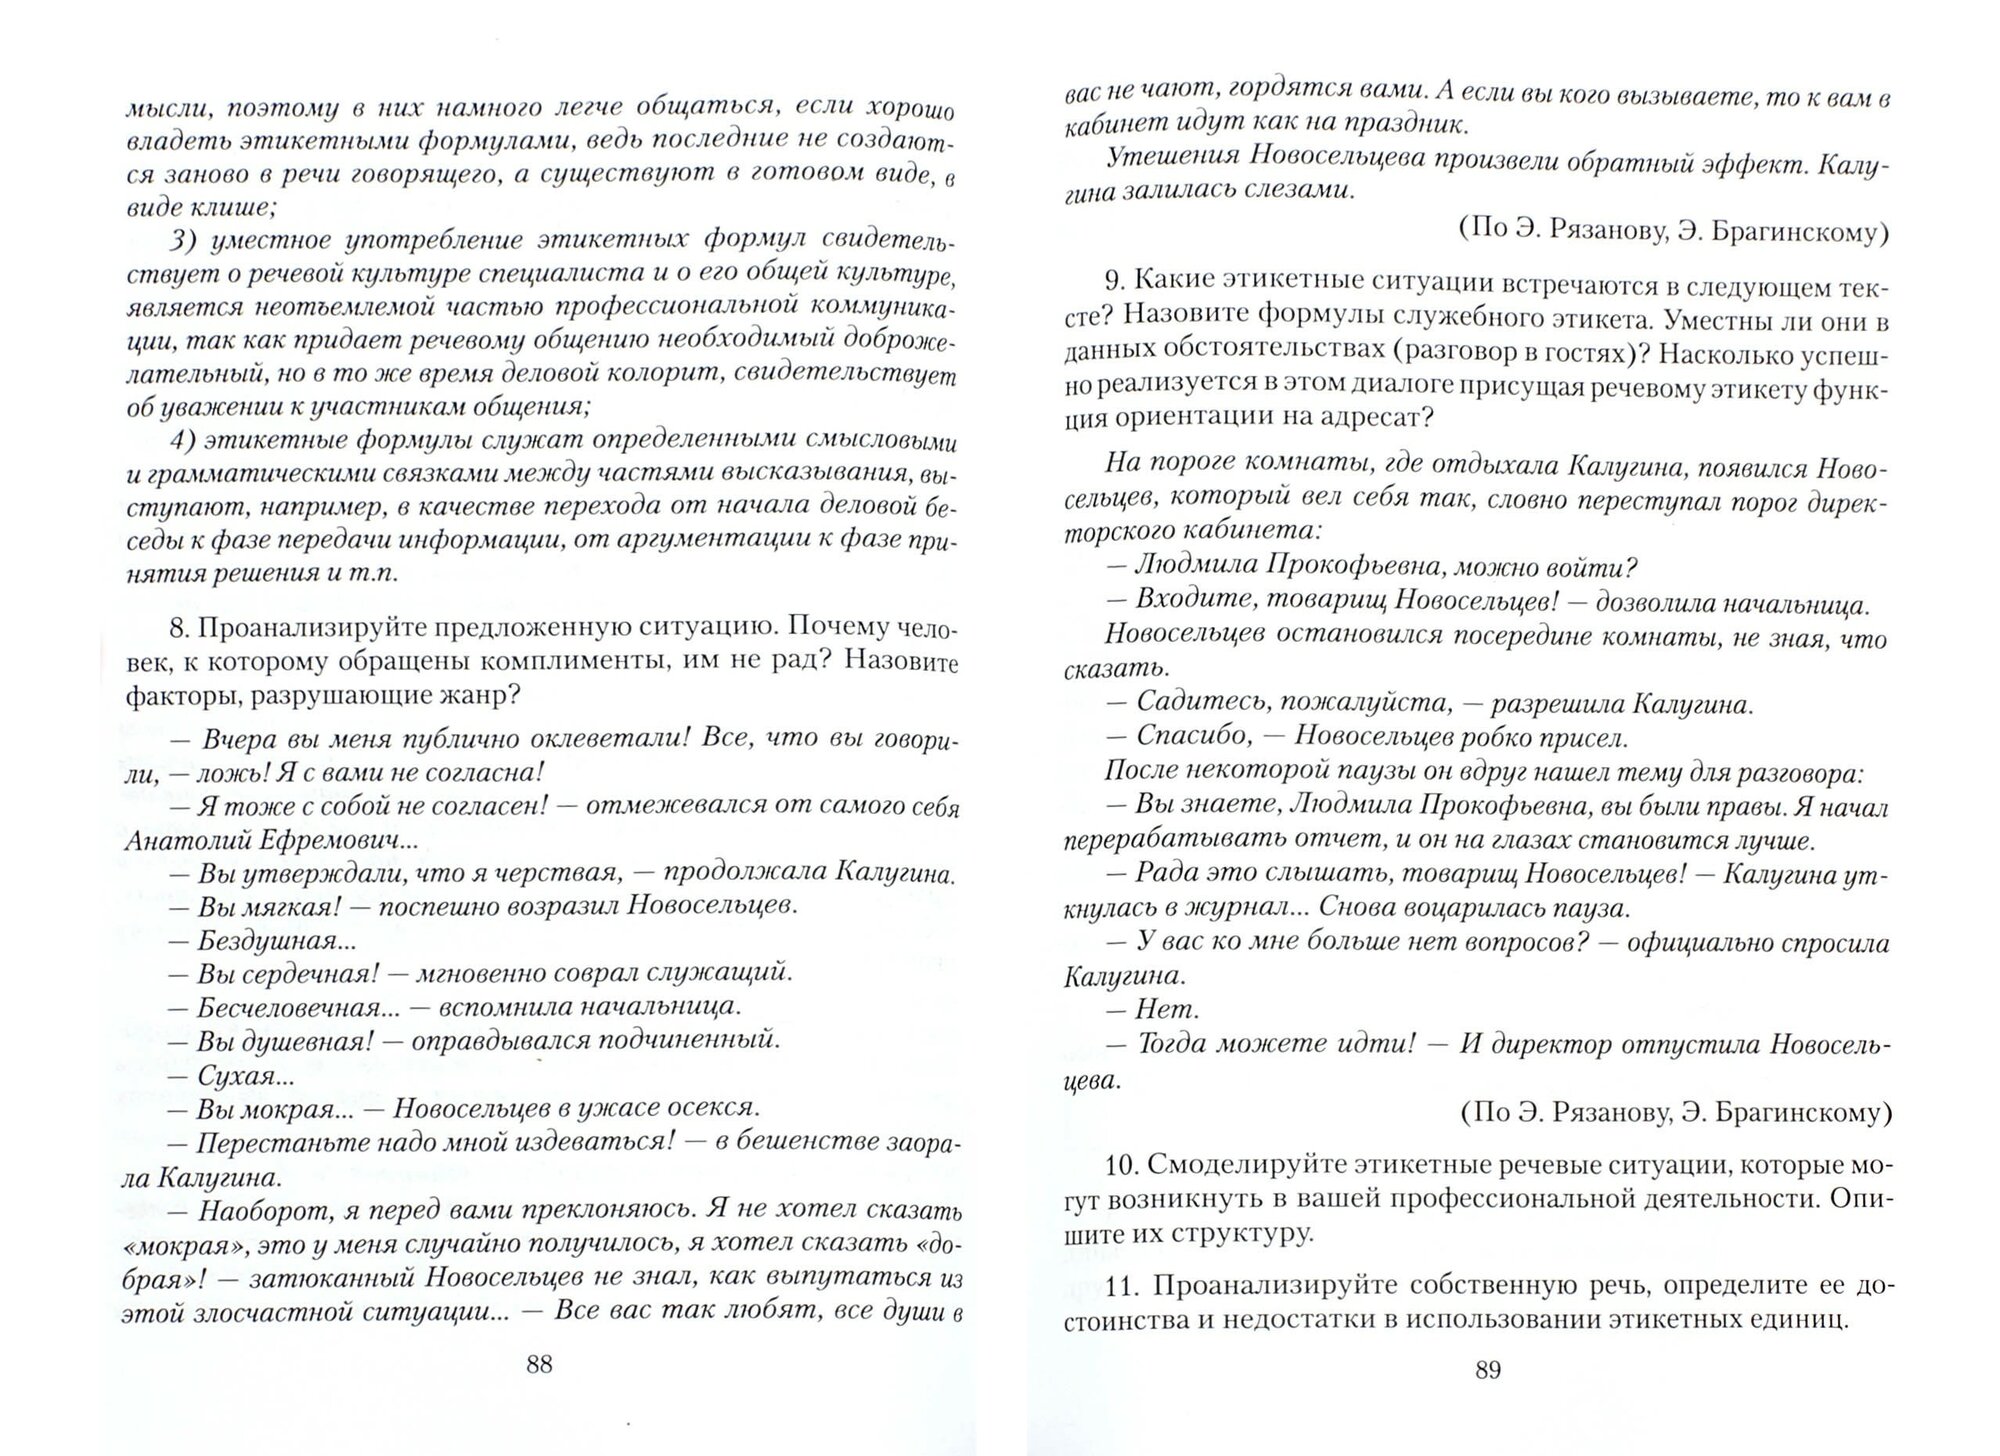 Русский язык и культура речи. Учебное пособие - фото №3